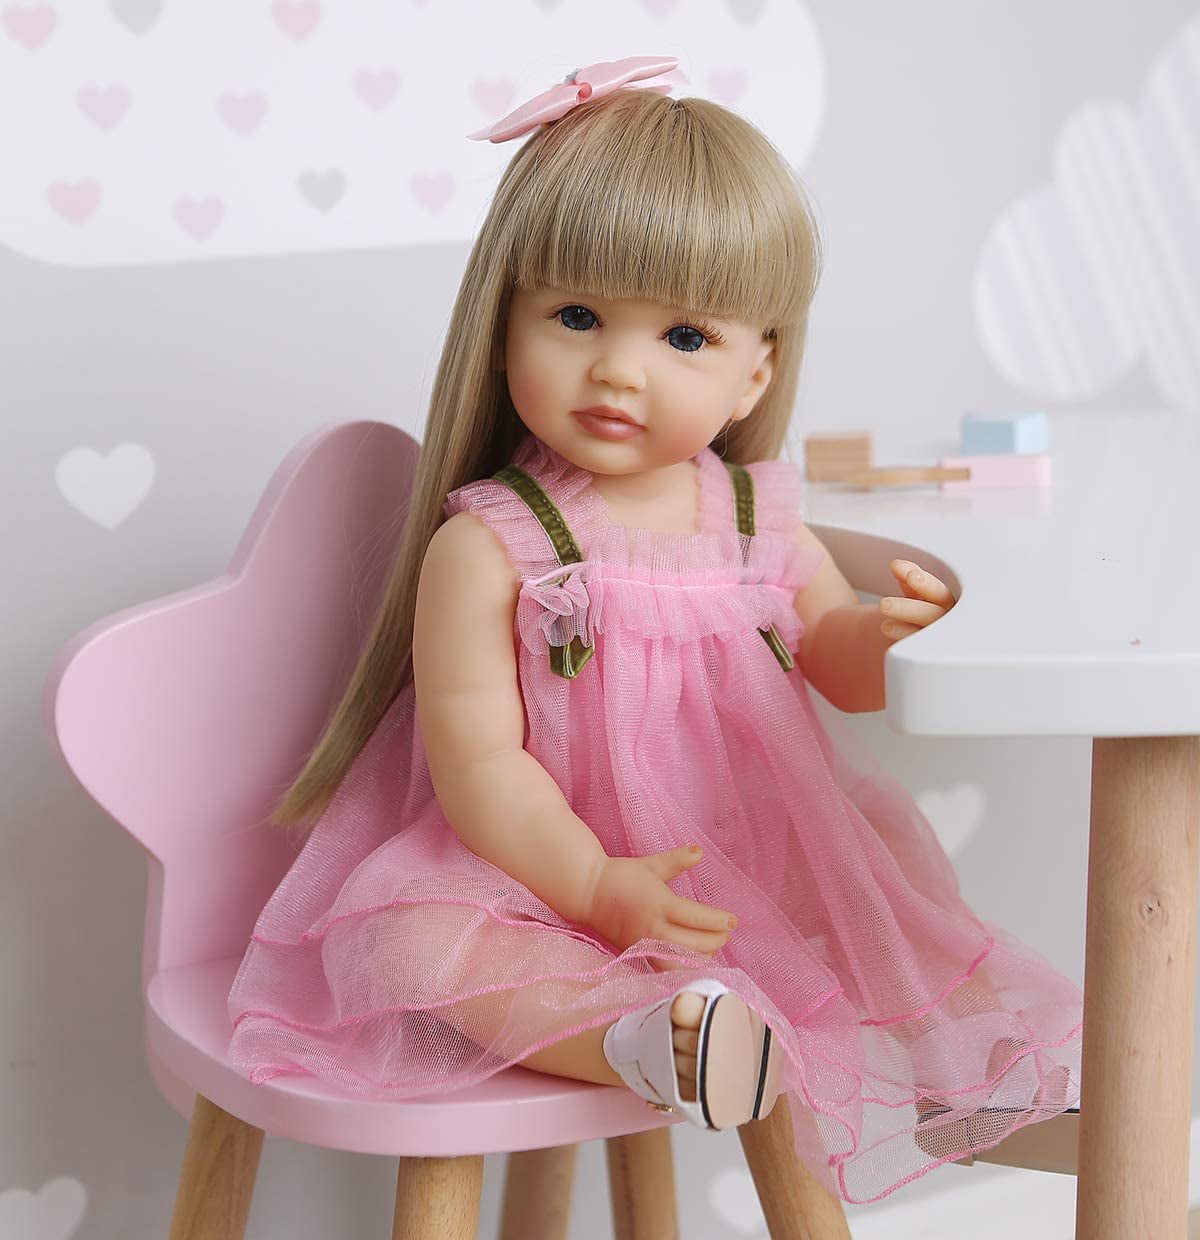 New Reborn Toddler Doll Lifelike Little Princess Girl Vinyl Long Hair Baby  22" 